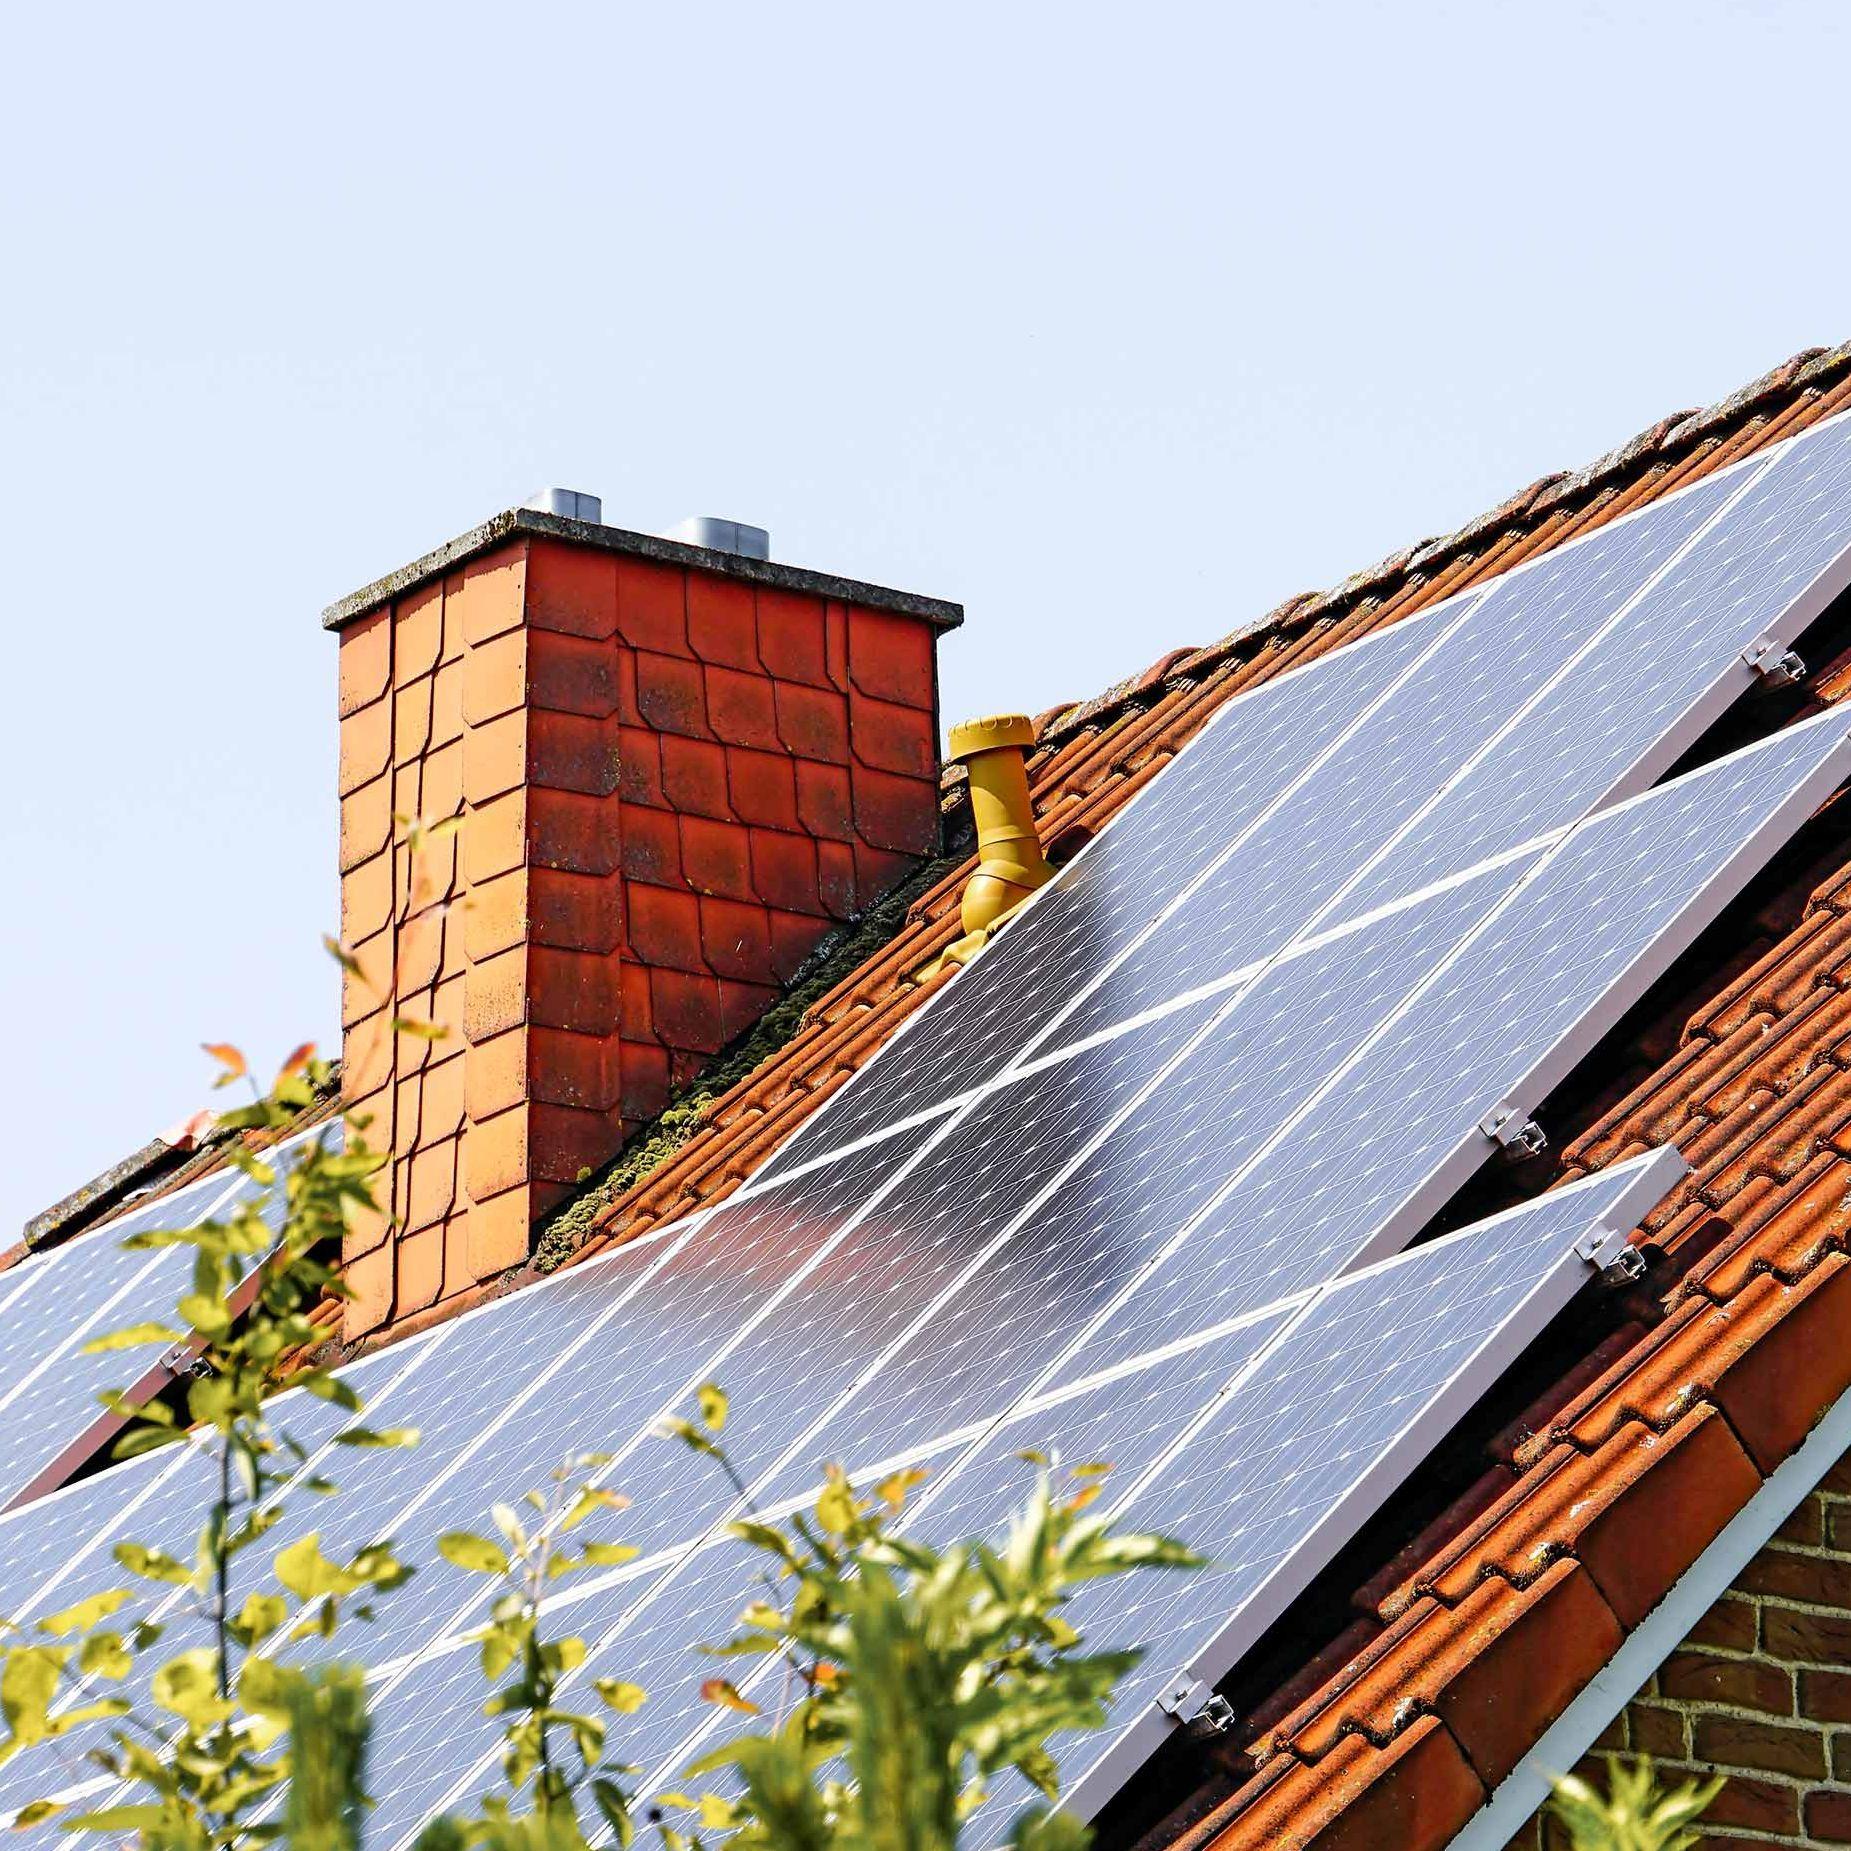 Von einem Einfamilienhaus ist nur das Dach und ein Schornstein zu sehen. Auf der Dachschräge sind eine Vielzahl von Solarpannels zu sehen.